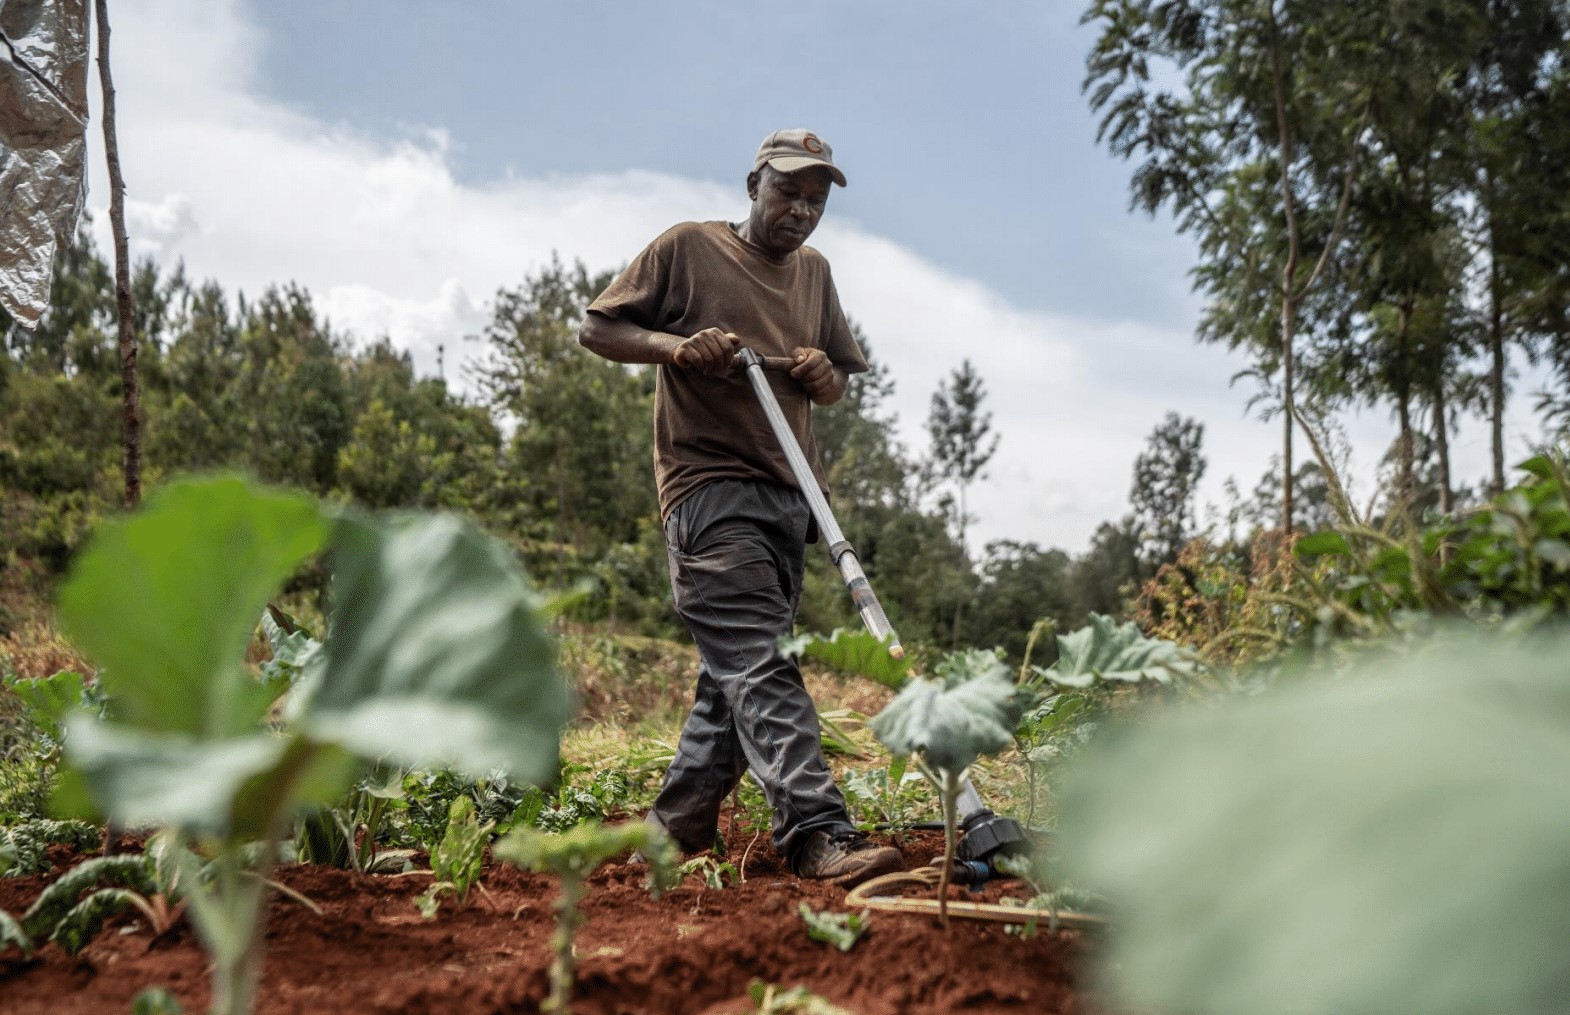 Prêt pour un gros plan sur les pompes d’irrigation Kickstart au Kenya?